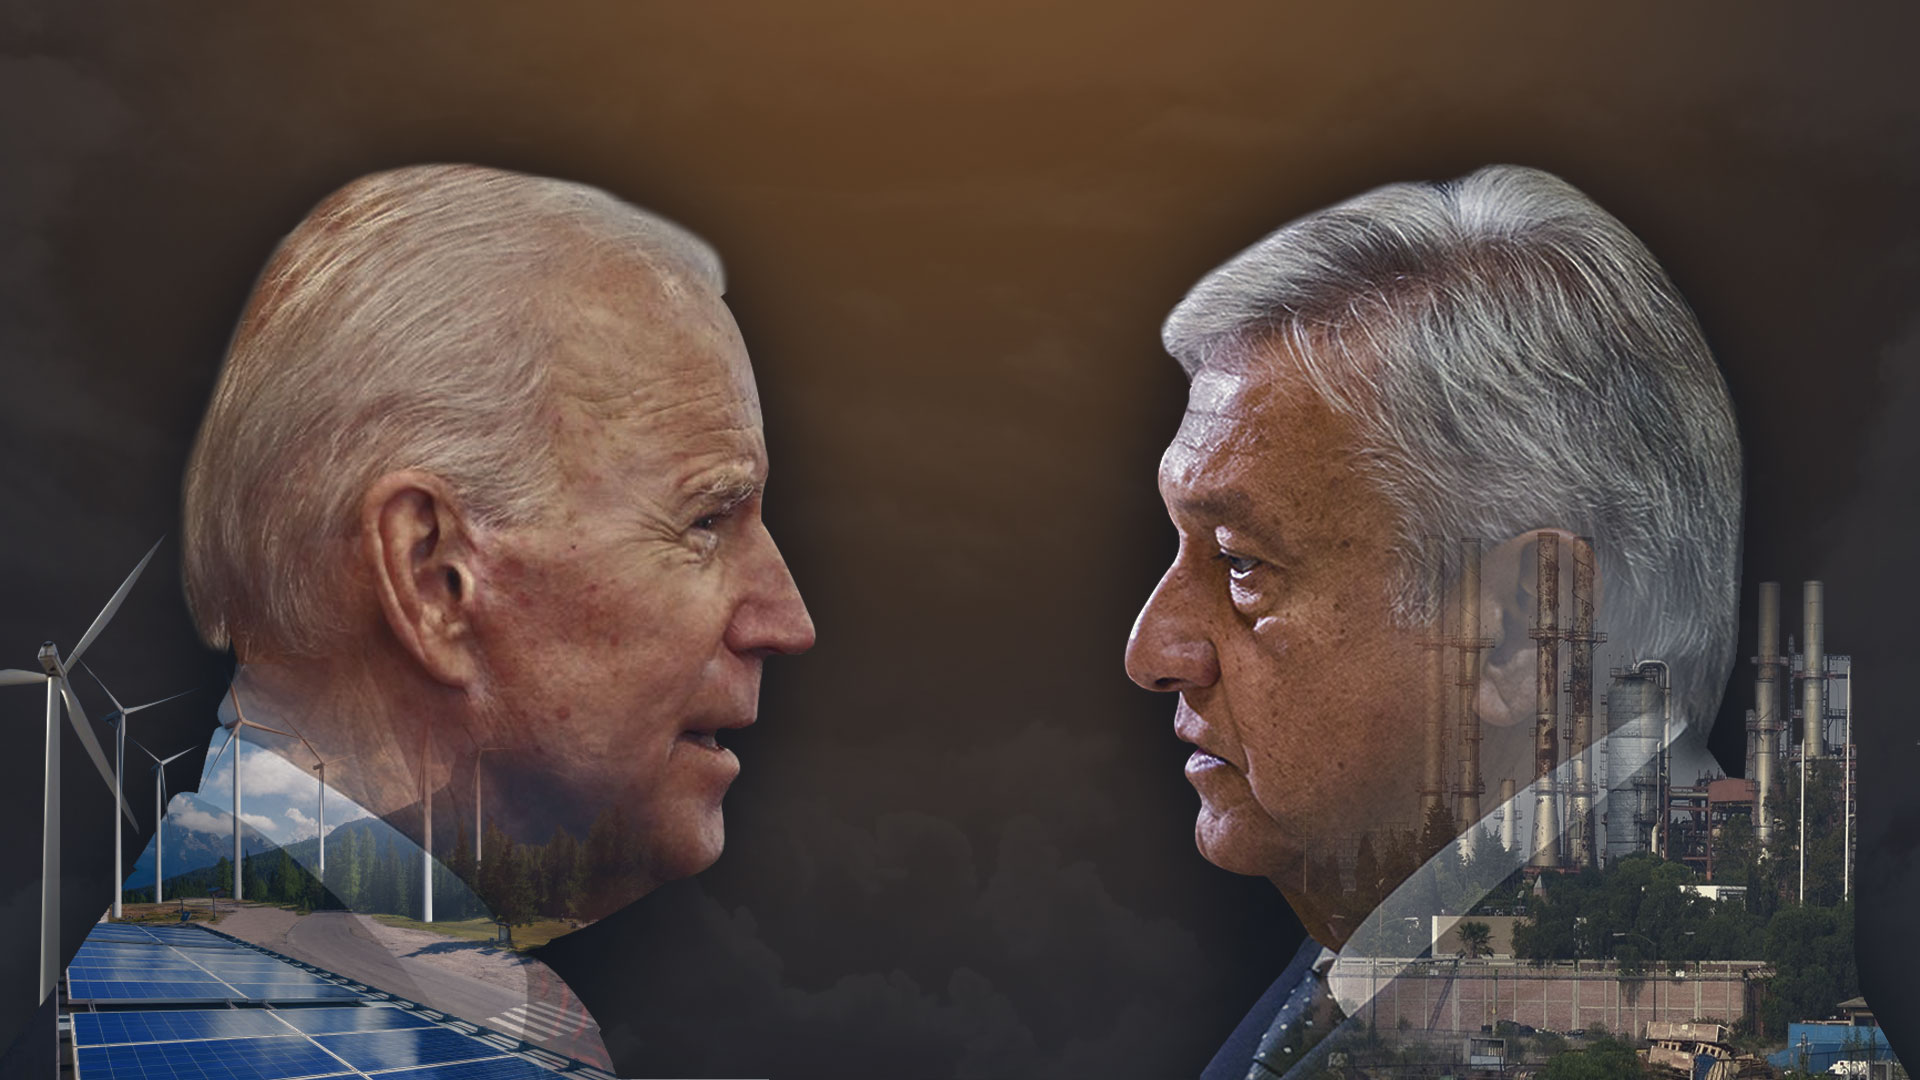 El presidente Joe Biden es un impulsor de energías limpías, pero López Obrador ha preferido apostar por construir una refinería (Ilustración: Jovani Pérez/Infobae)